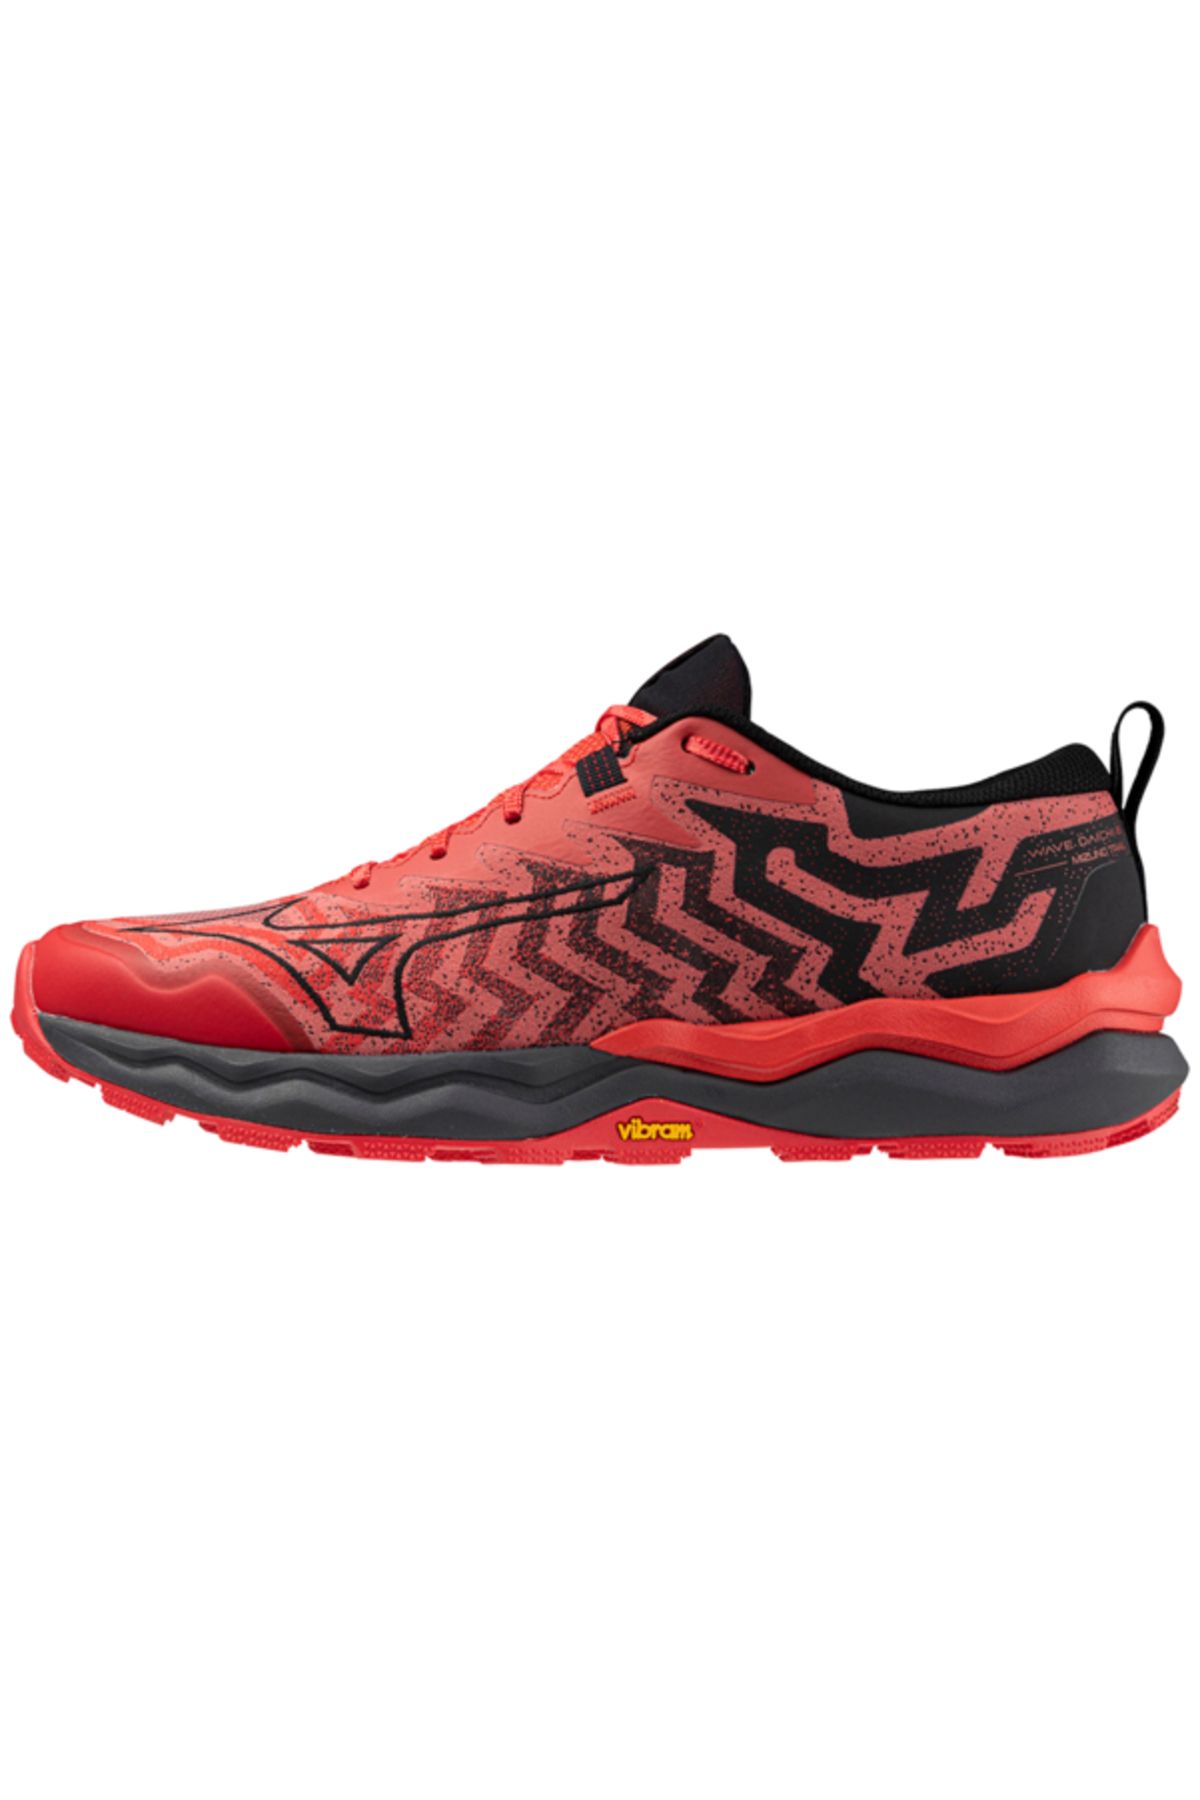 Mizuno Wave Daichi 8 Erkek Koşu Ayakkabısı Kırmızı